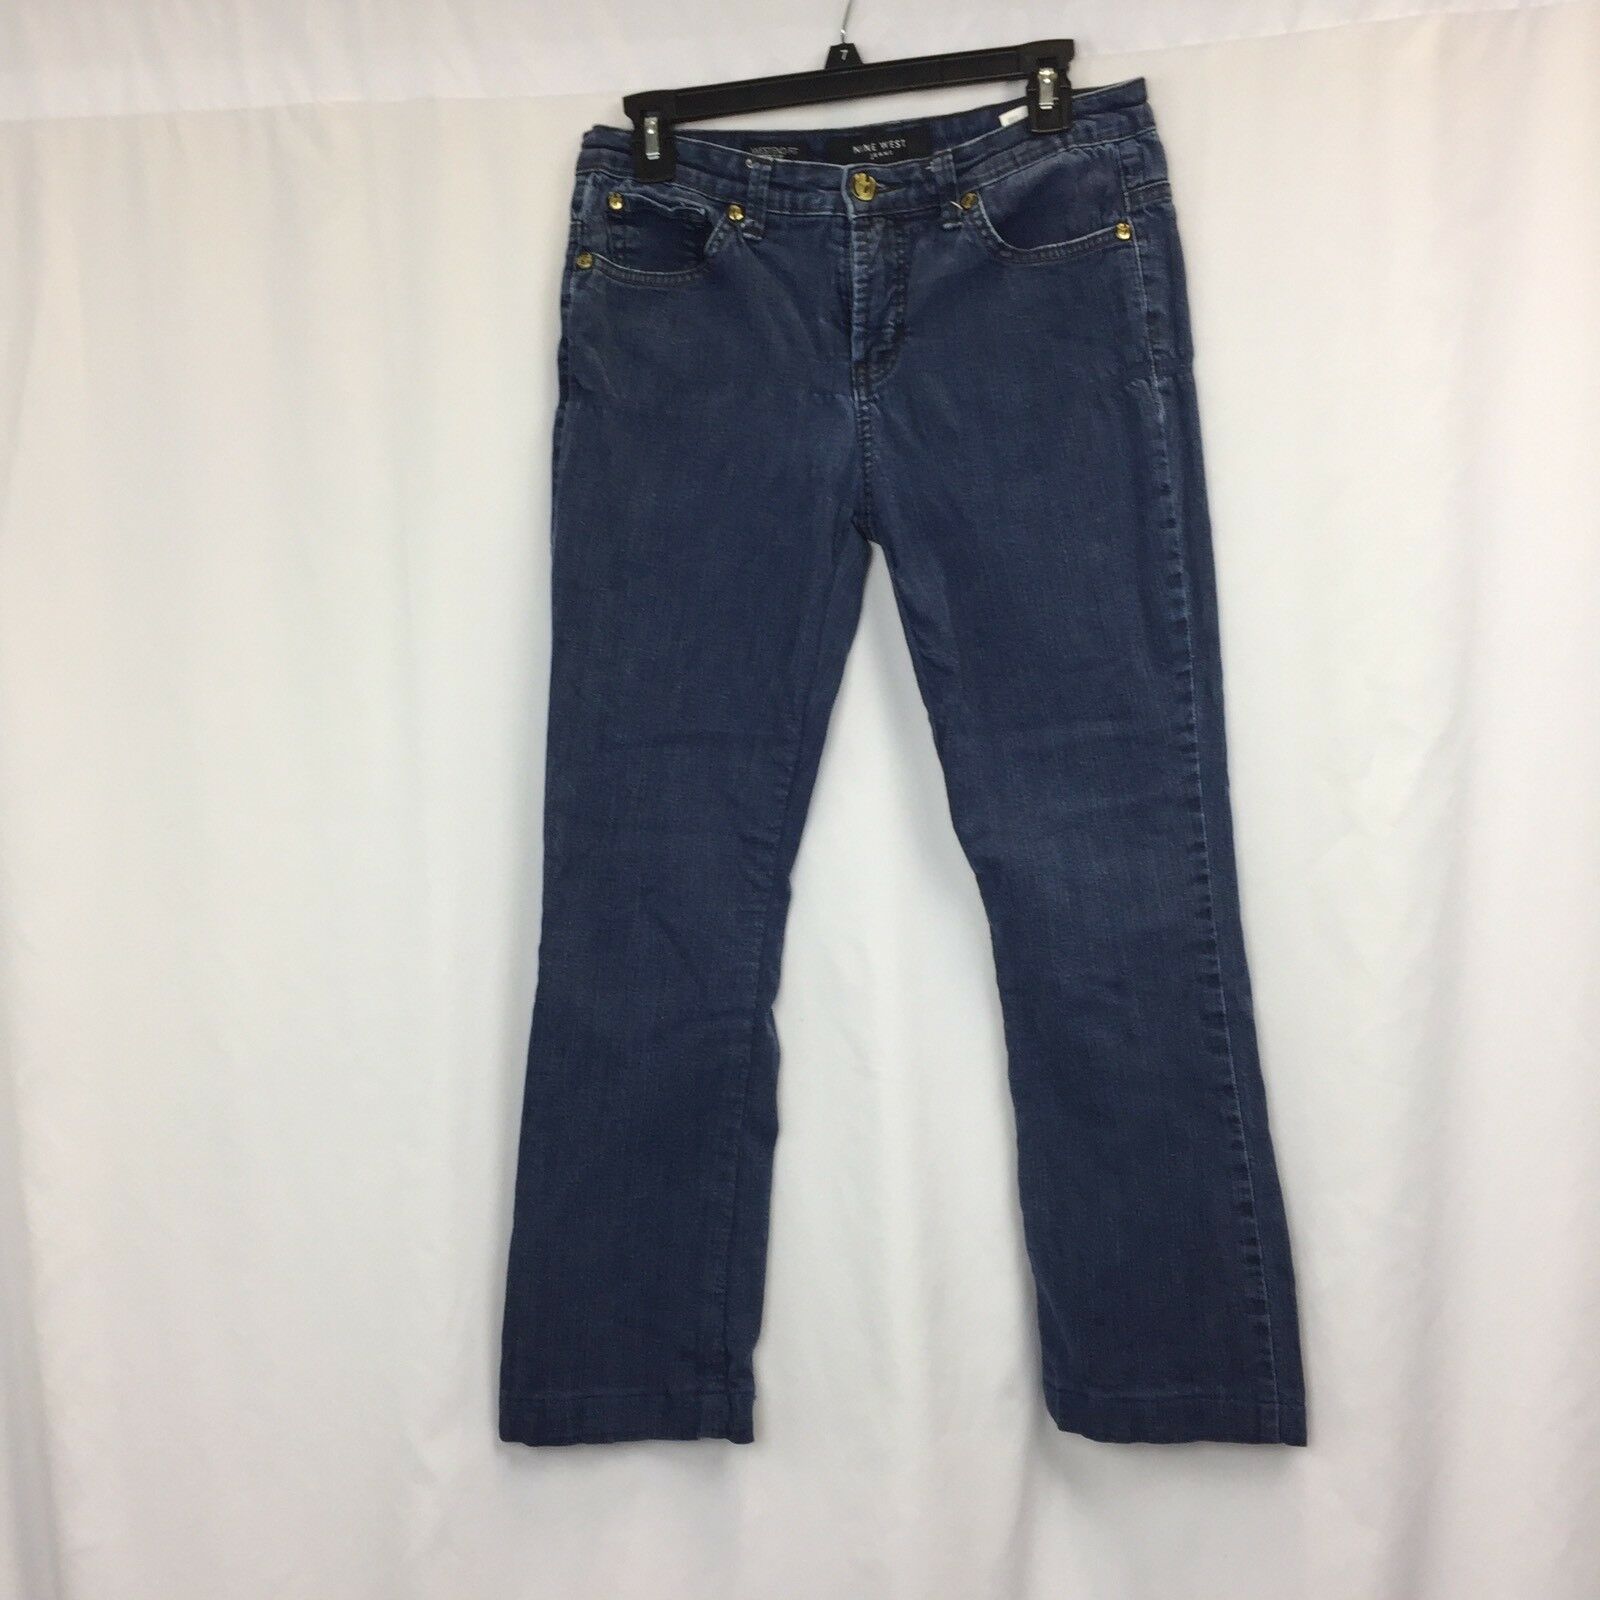 Nine West Womens sz 8/29 Jeans Dark Wash Denim Boot Cut Pants - Jeans